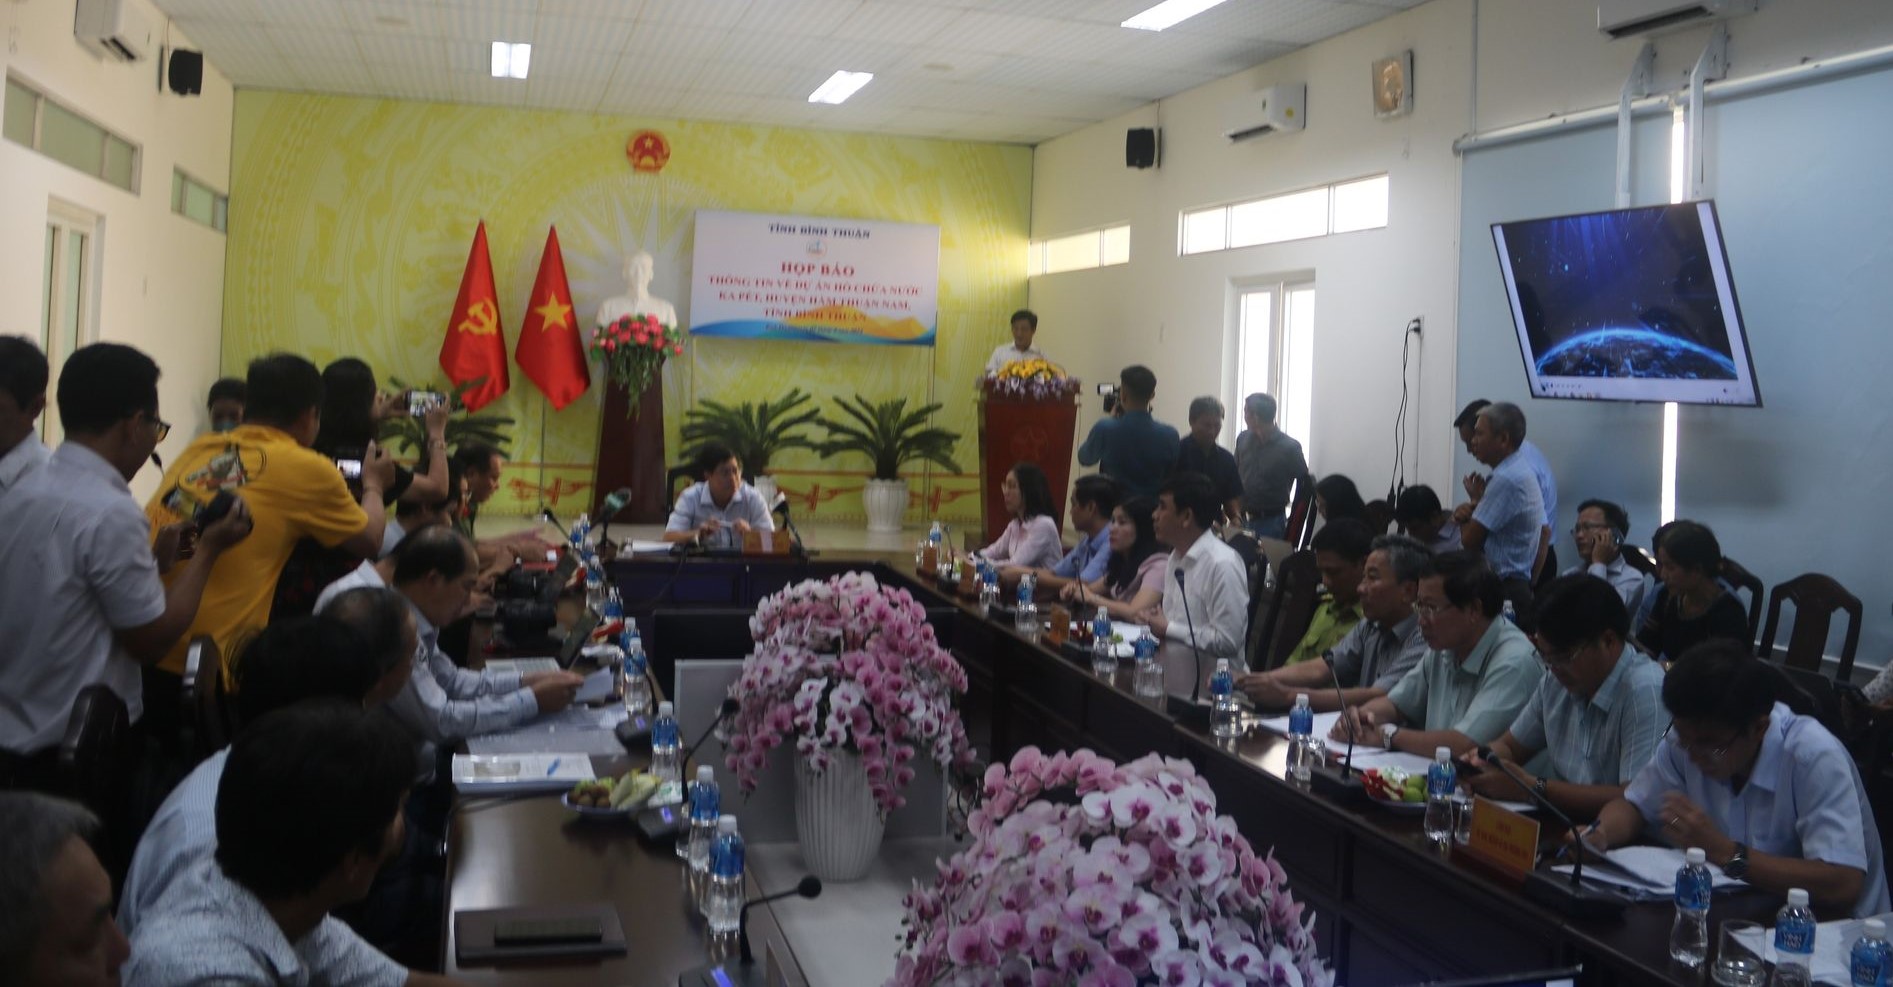 Bình Thuận đang họp báo về việc lấy hơn 600 ha rừng làm hồ chứa nước Ka Pét - Ảnh 1.